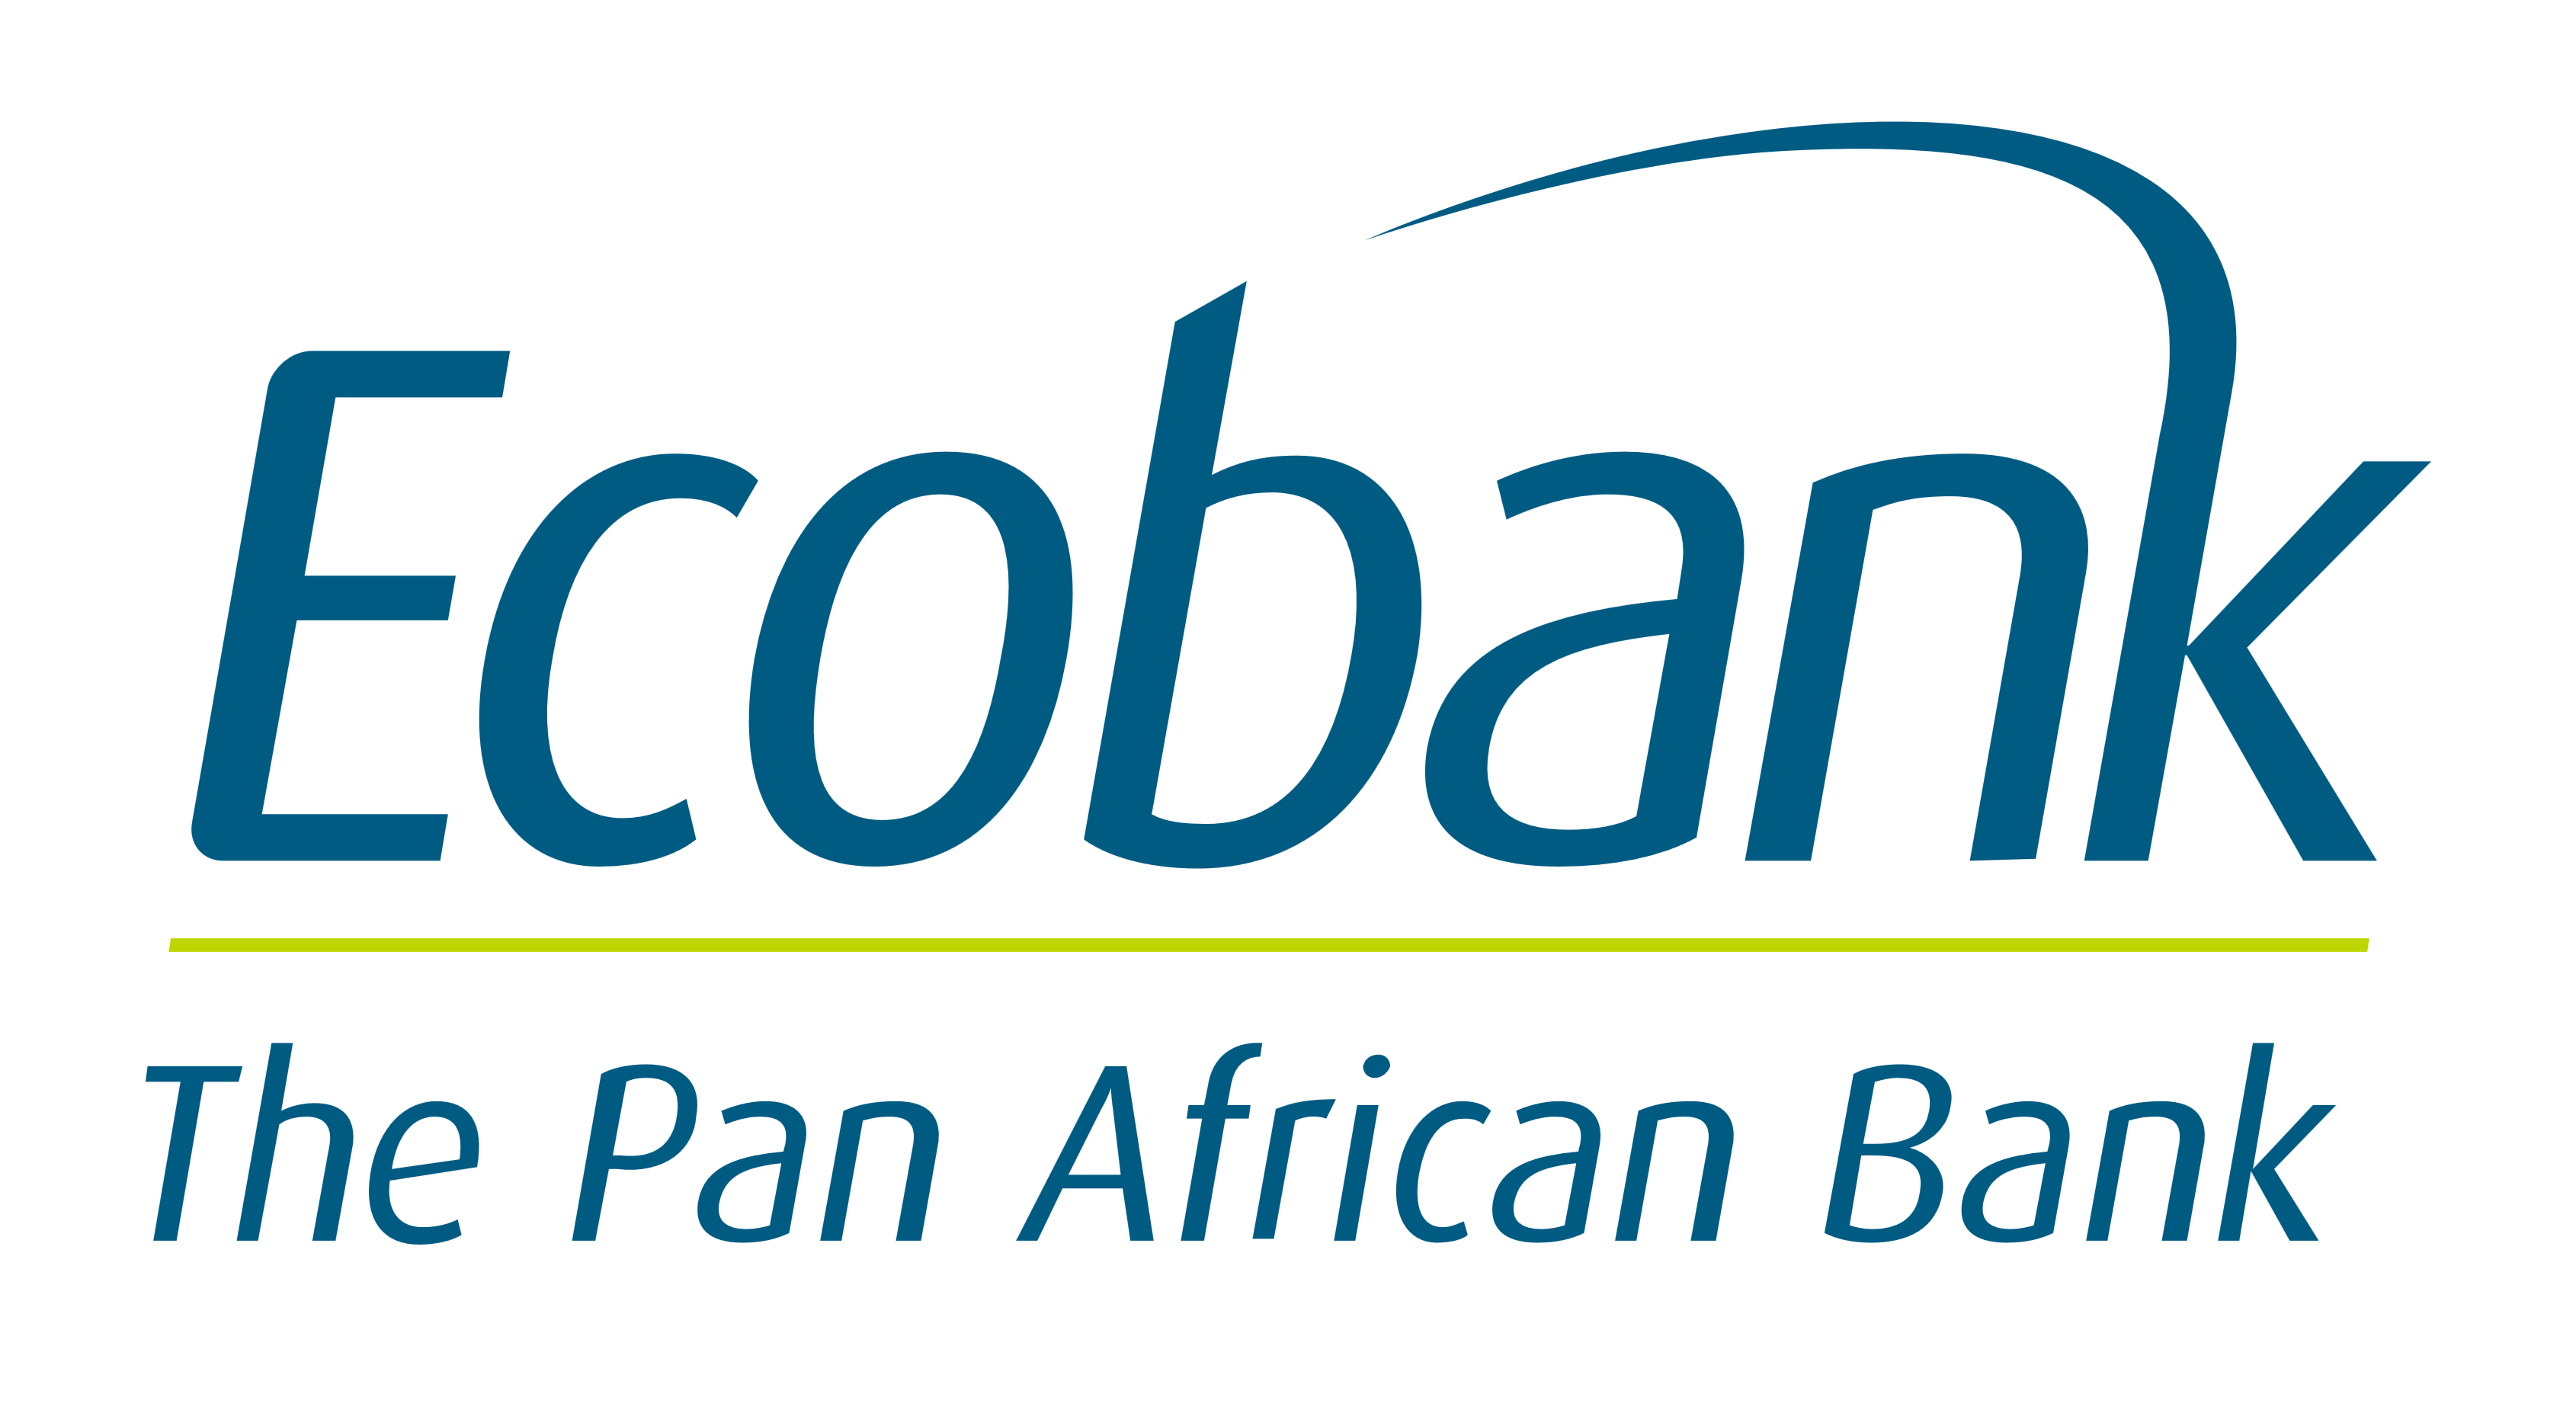 Ecobank logo, logotype